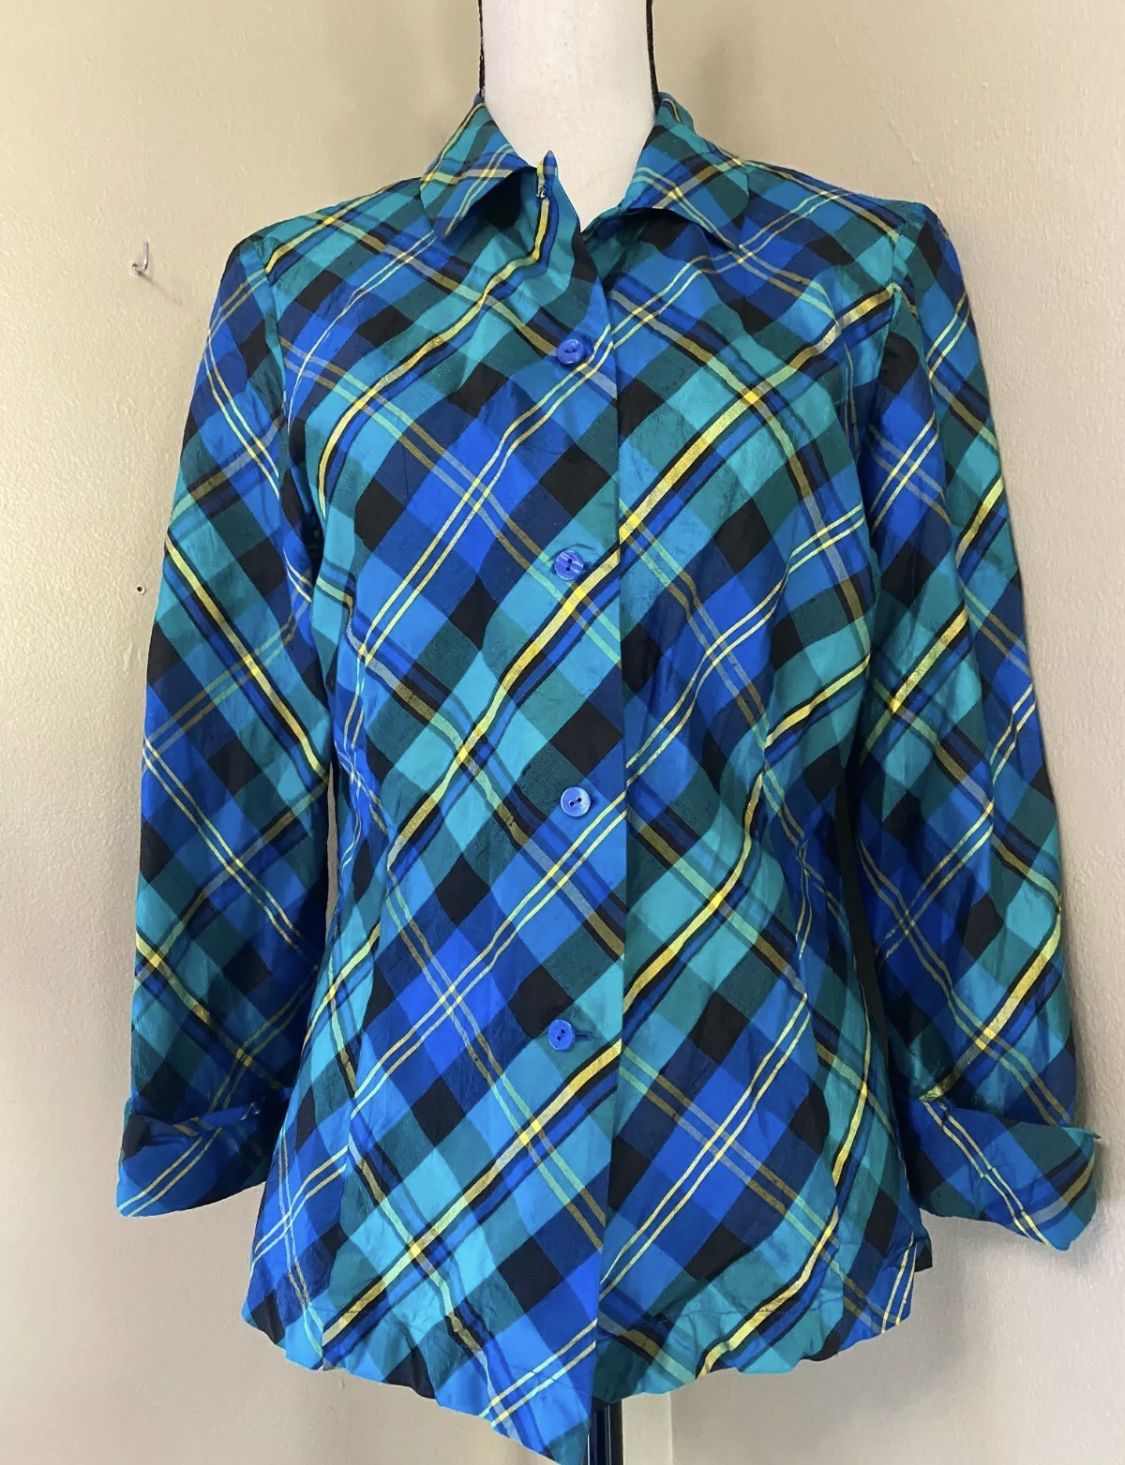 Dana Buchman Green Blue Plaid Silk Button Down Shirt Blouse 3/4 Sleeve Womens 12